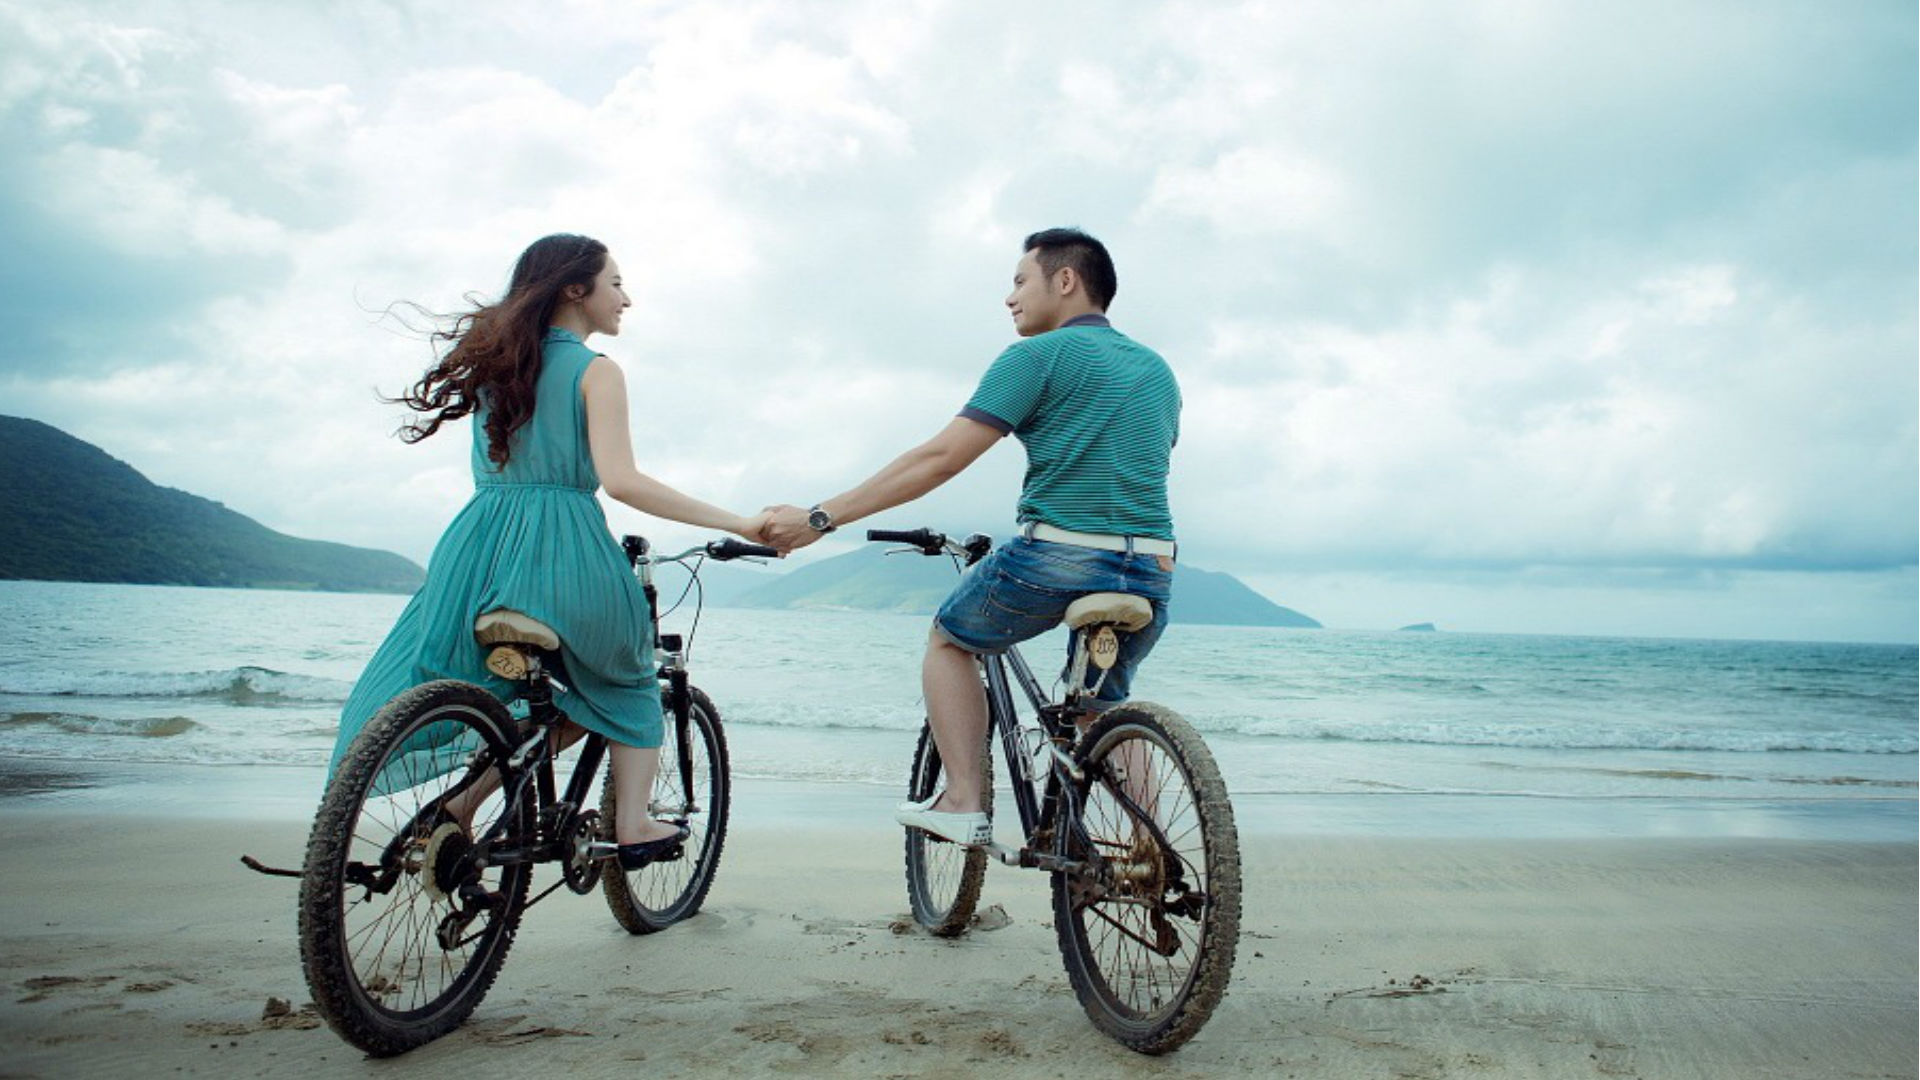 Best Honeymoon Destination: क्या हनीमून पर जा रहे हैं विदेश, खास लम्हों के लिए बेस्ट हैं ये फॉरेन डेस्टिनेशन